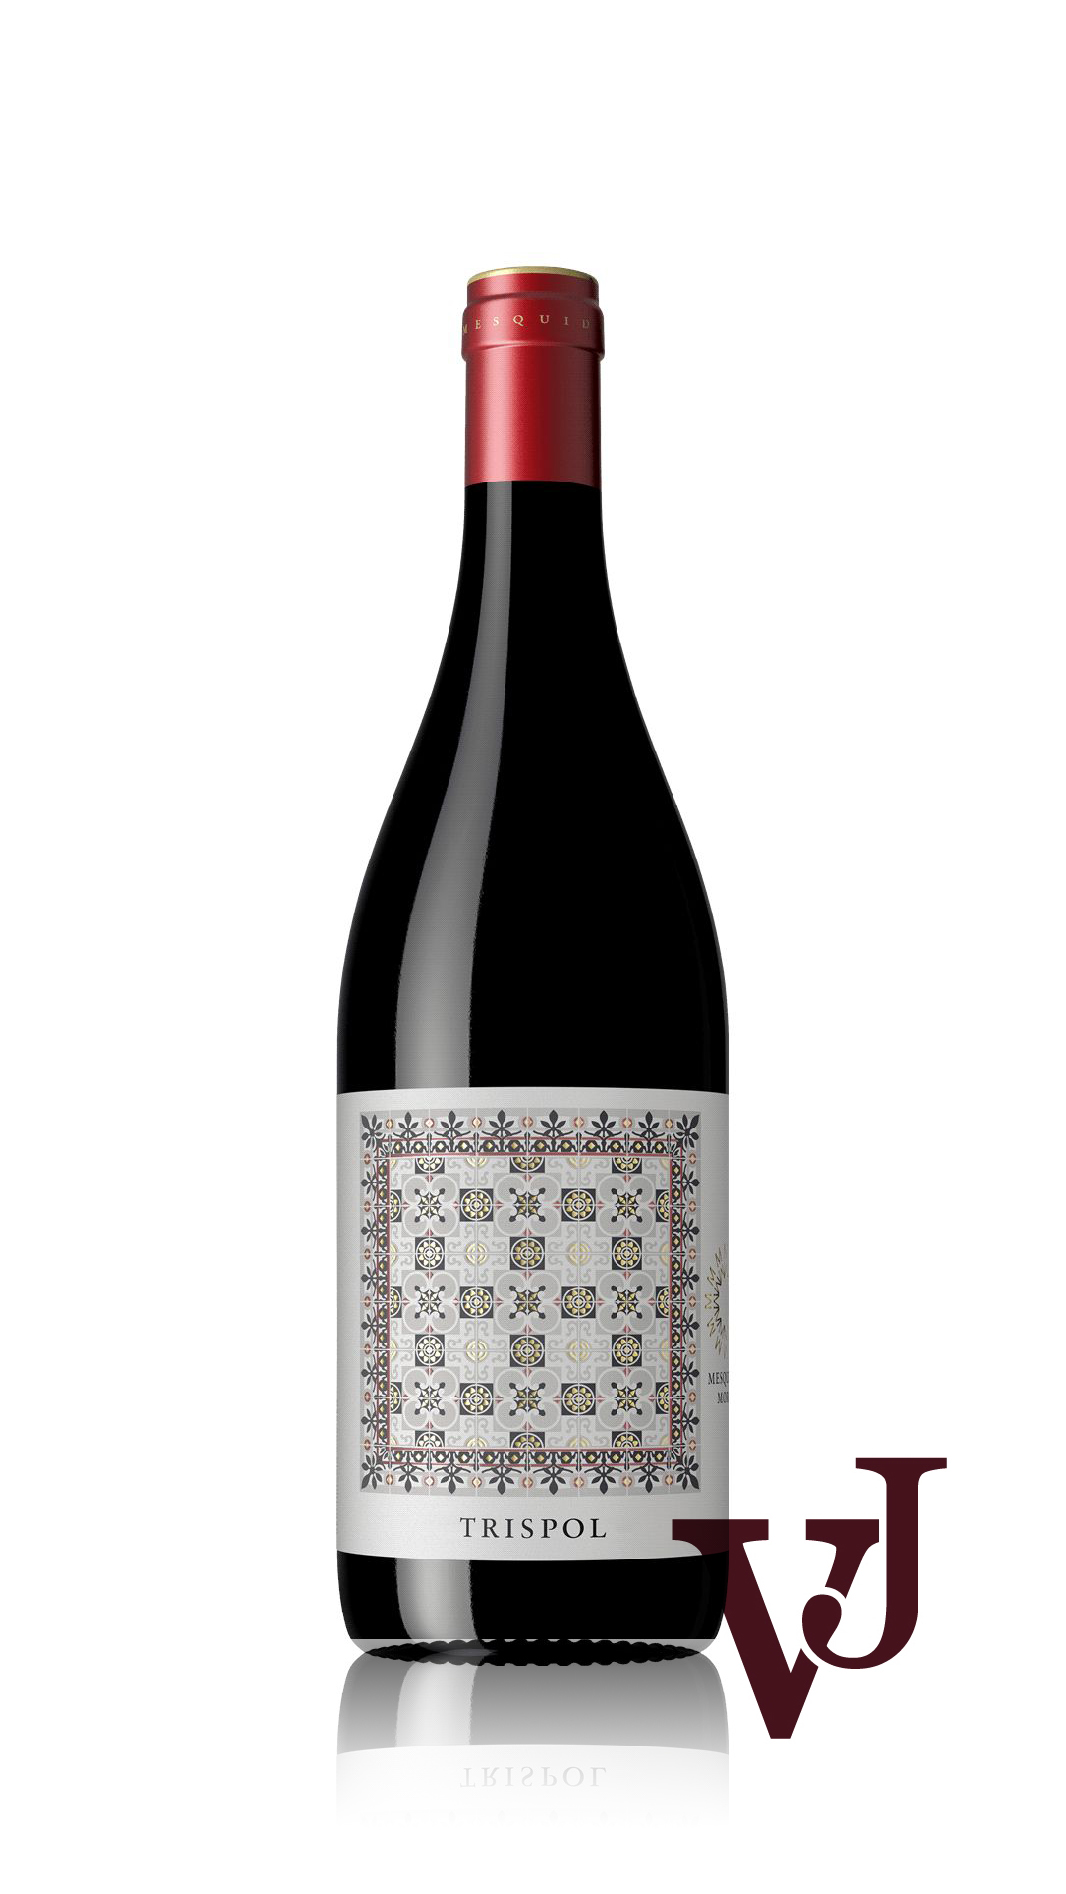 Rött Vin - Trispol Negre Ecologic artikel nummer 7974201 från producenten Mesquida Mora S.L. från området Spanien